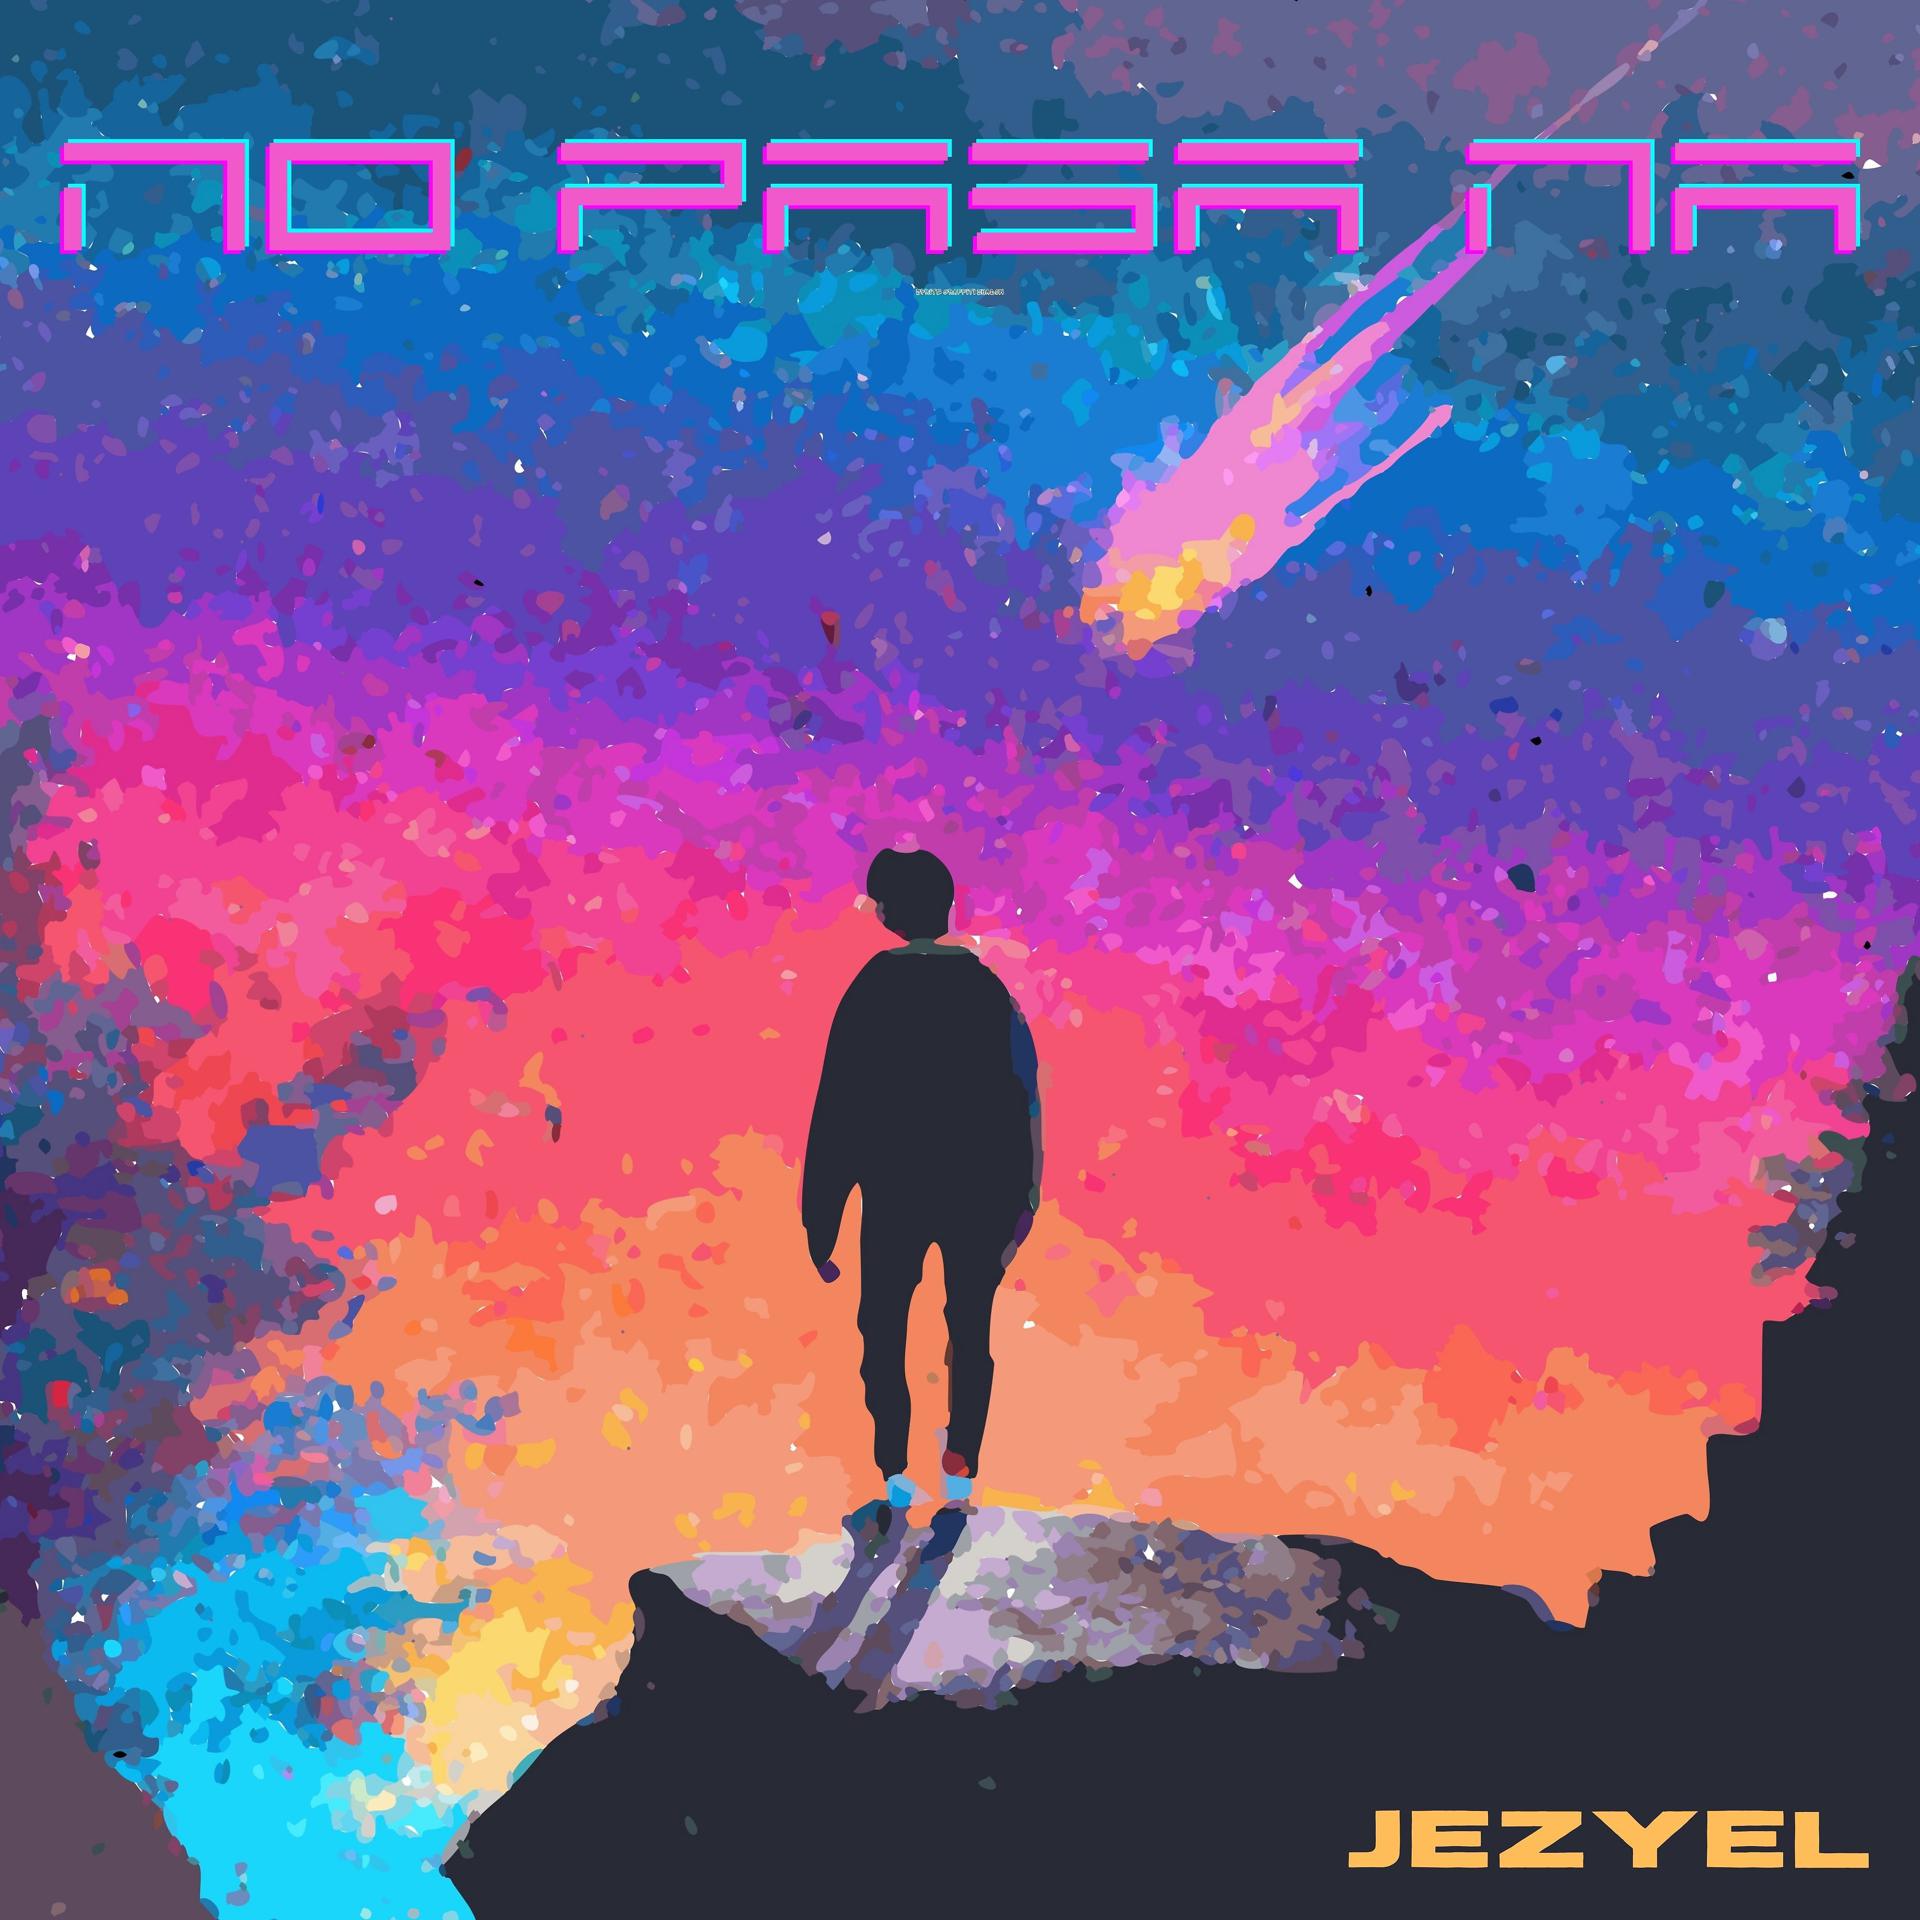 Постер альбома No Pasa Na